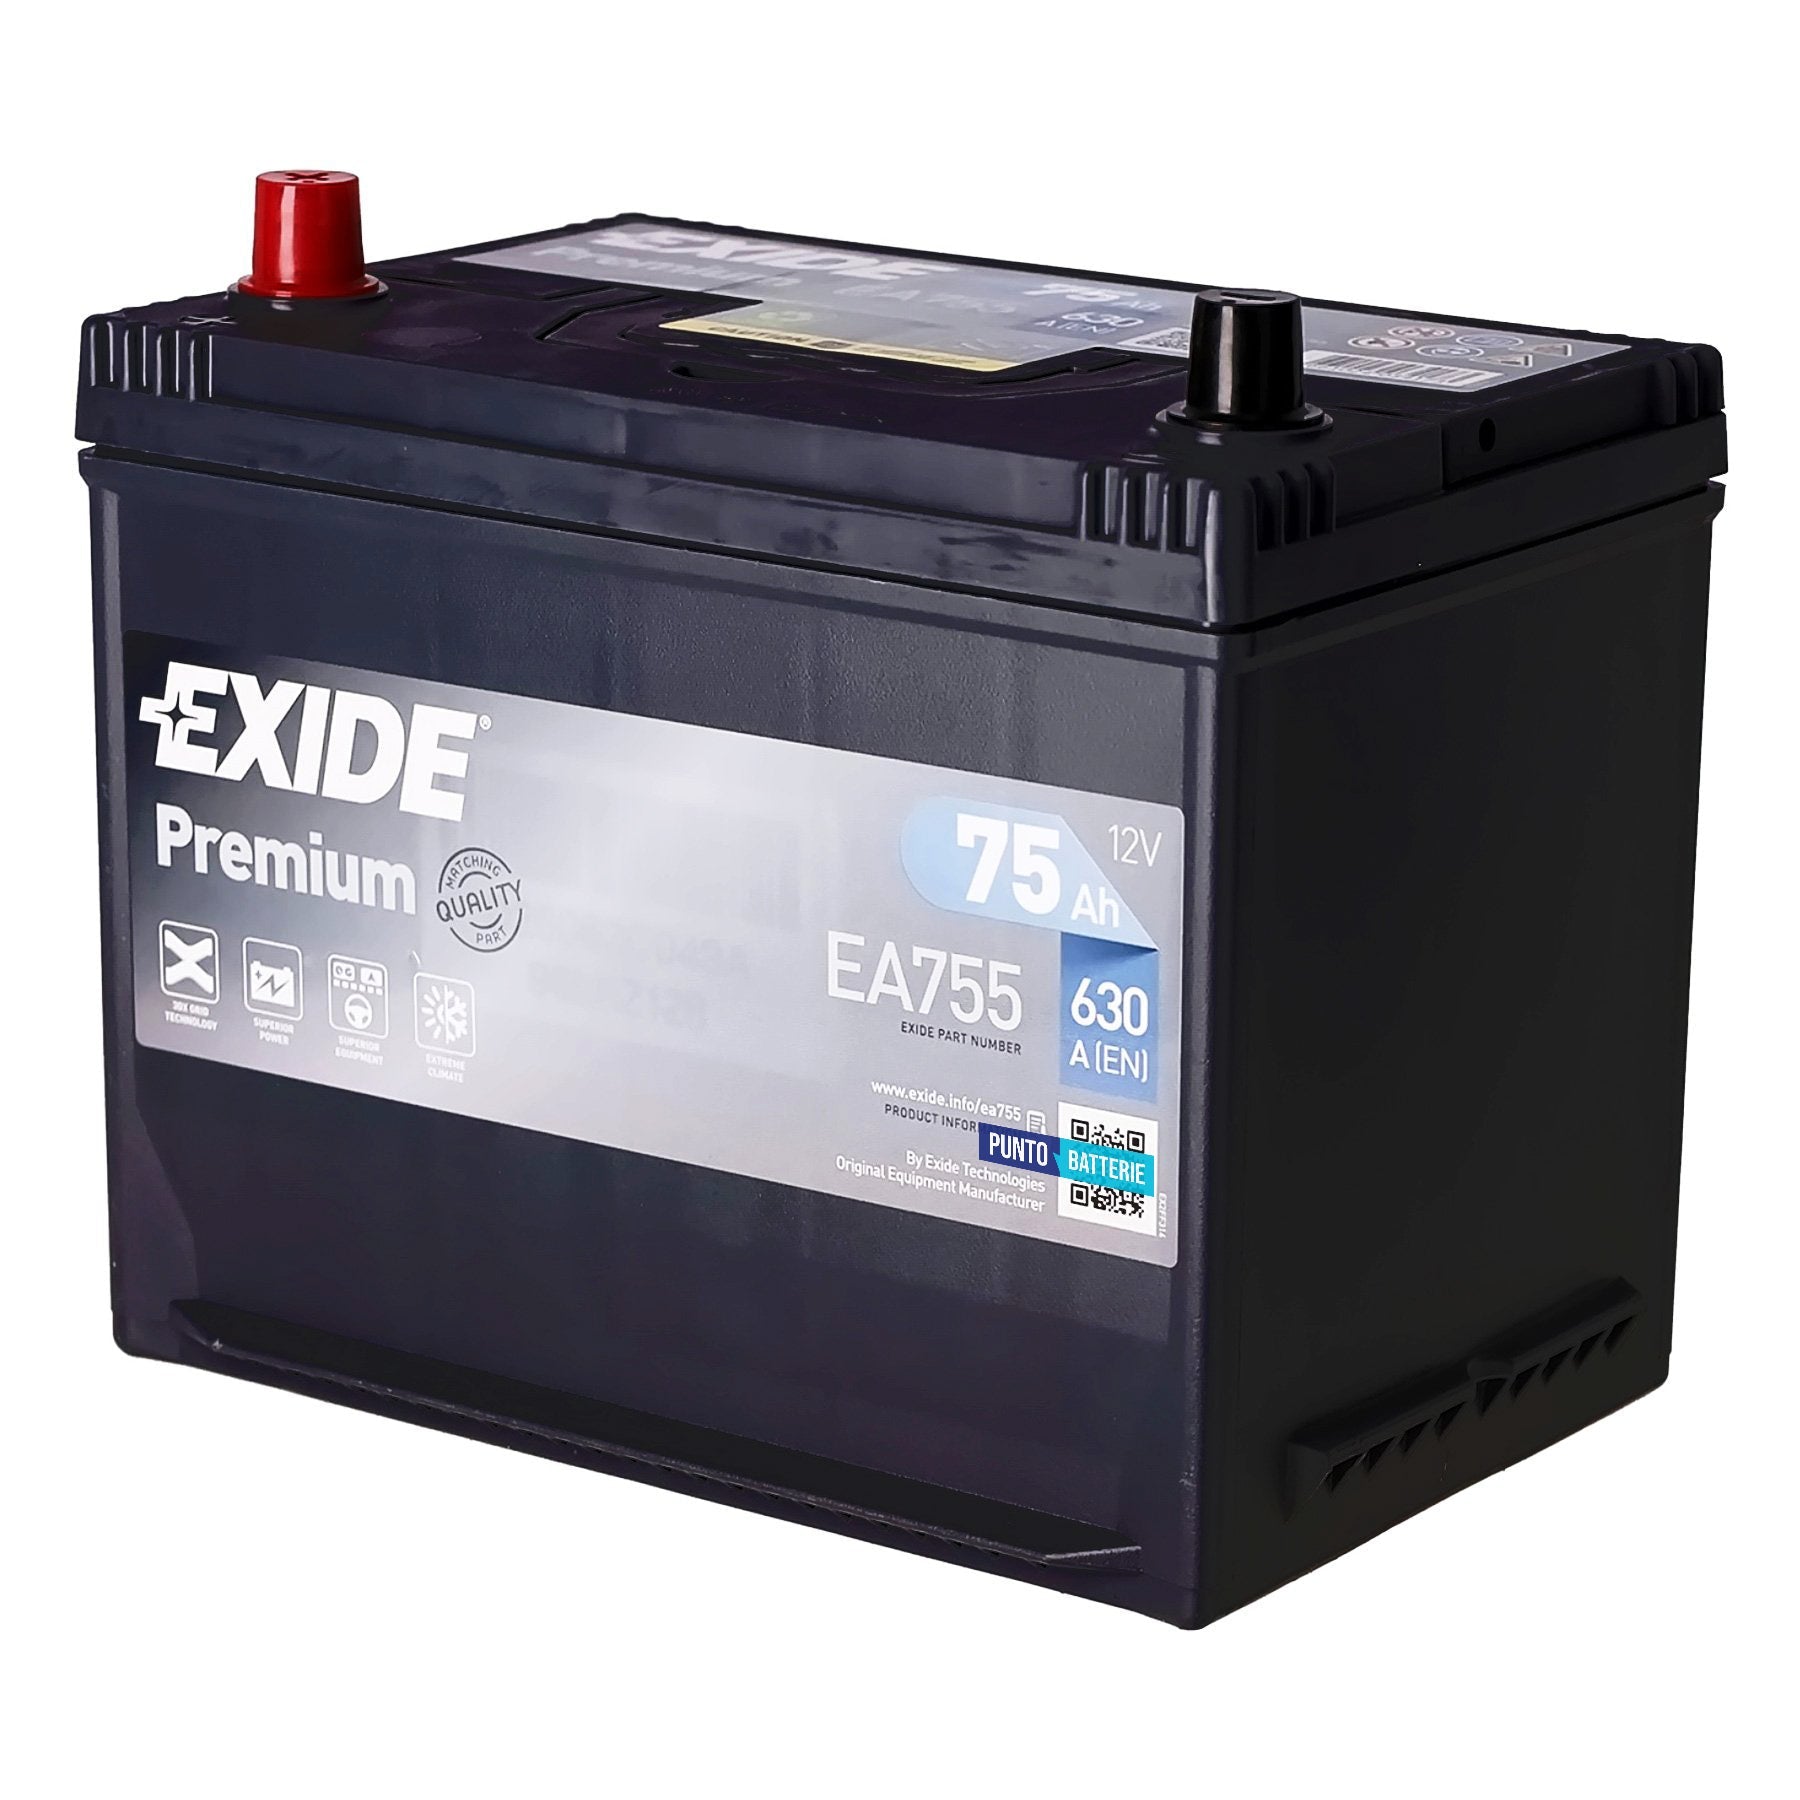 Batteria originale Exide Premium EA755, dimensioni 270 x 173 x 222, polo positivo a sinistra, 12 volt, 75 amperora, 630 ampere. Batteria per auto e veicoli leggeri.